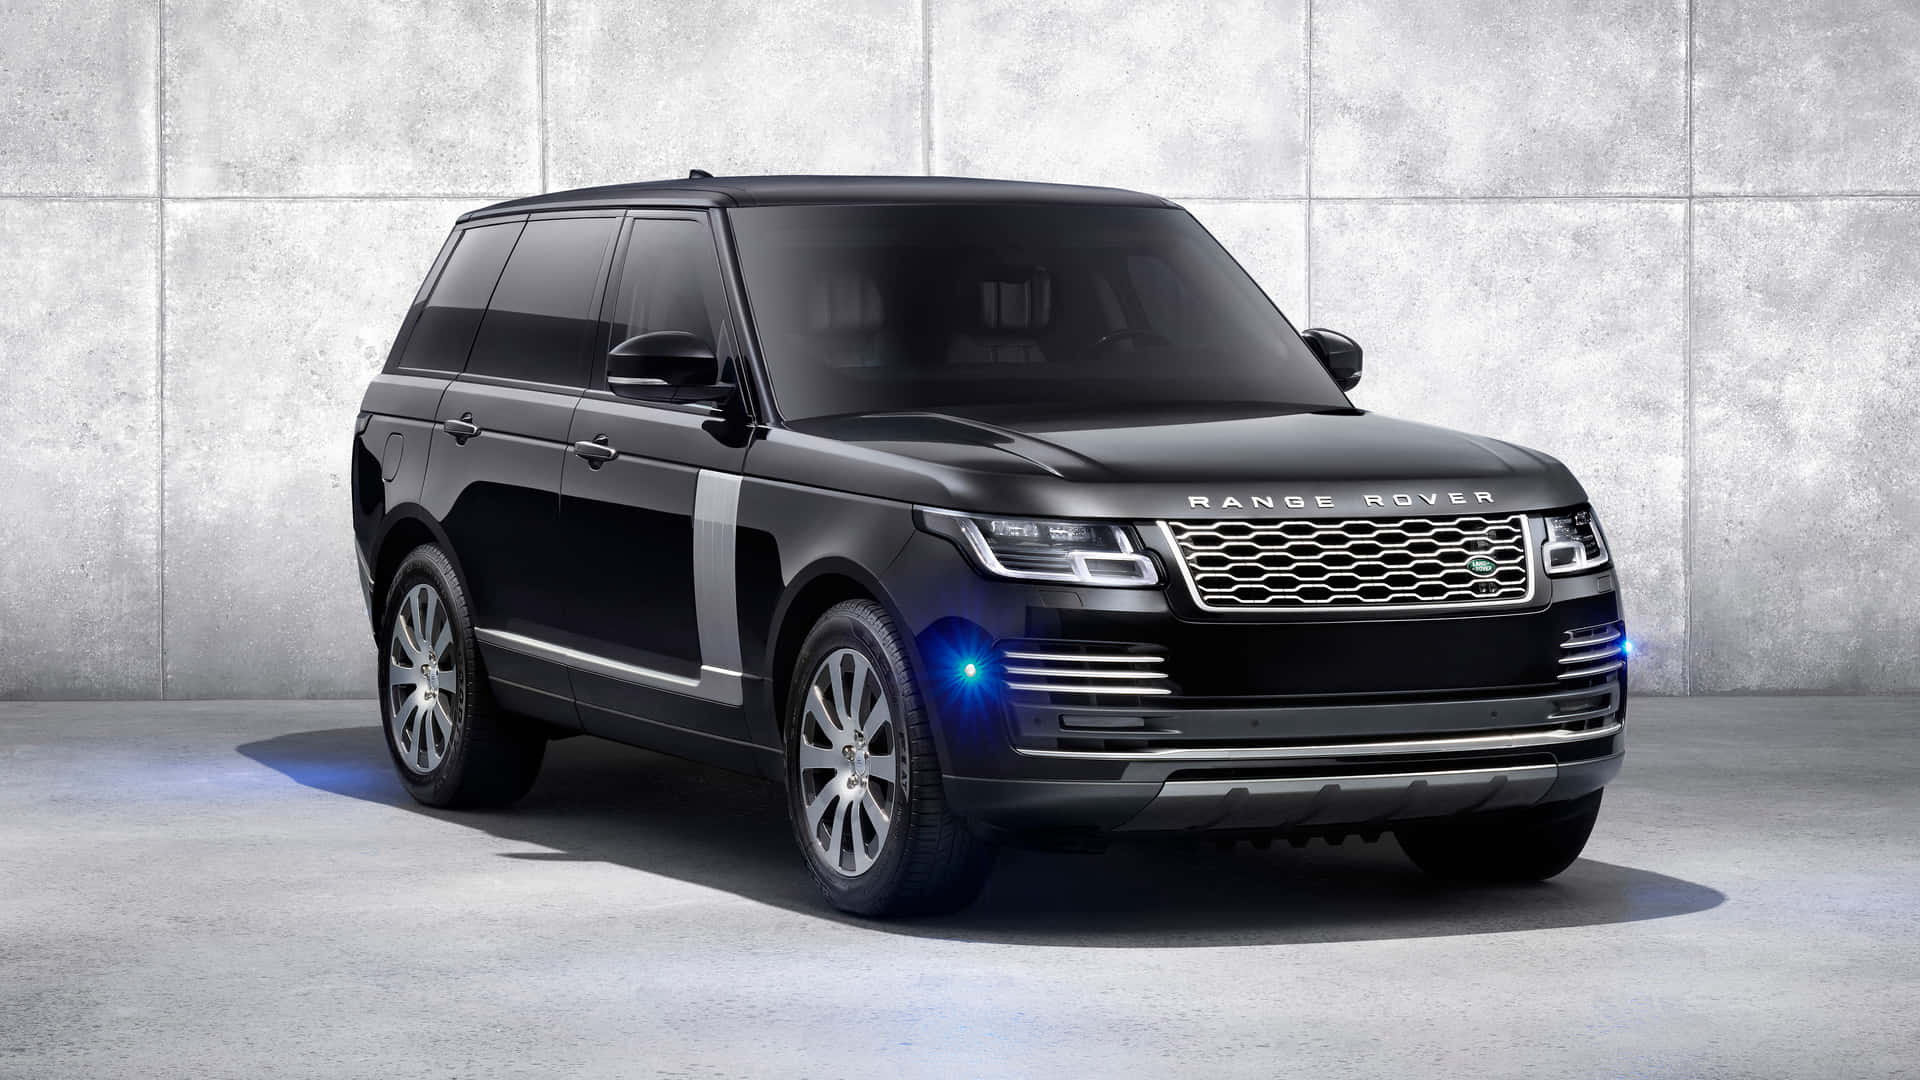 Lanuova Range Rover Vogue Viene Mostrata In Colore Nero.